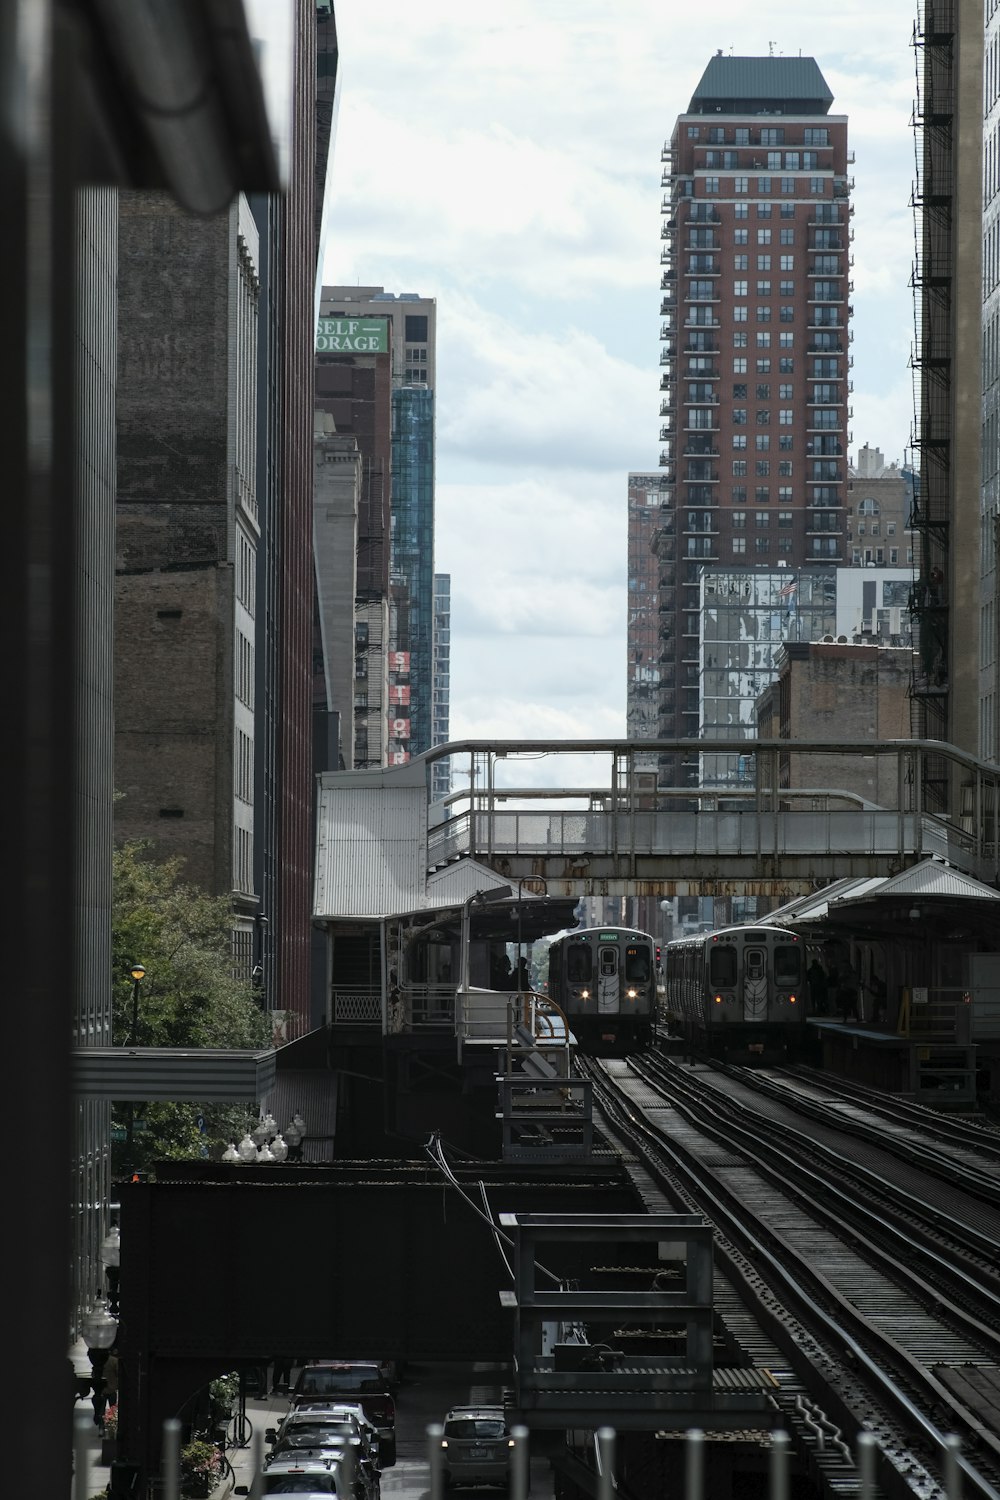 Tren marrón sobre rieles cerca de un edificio de gran altura durante el día